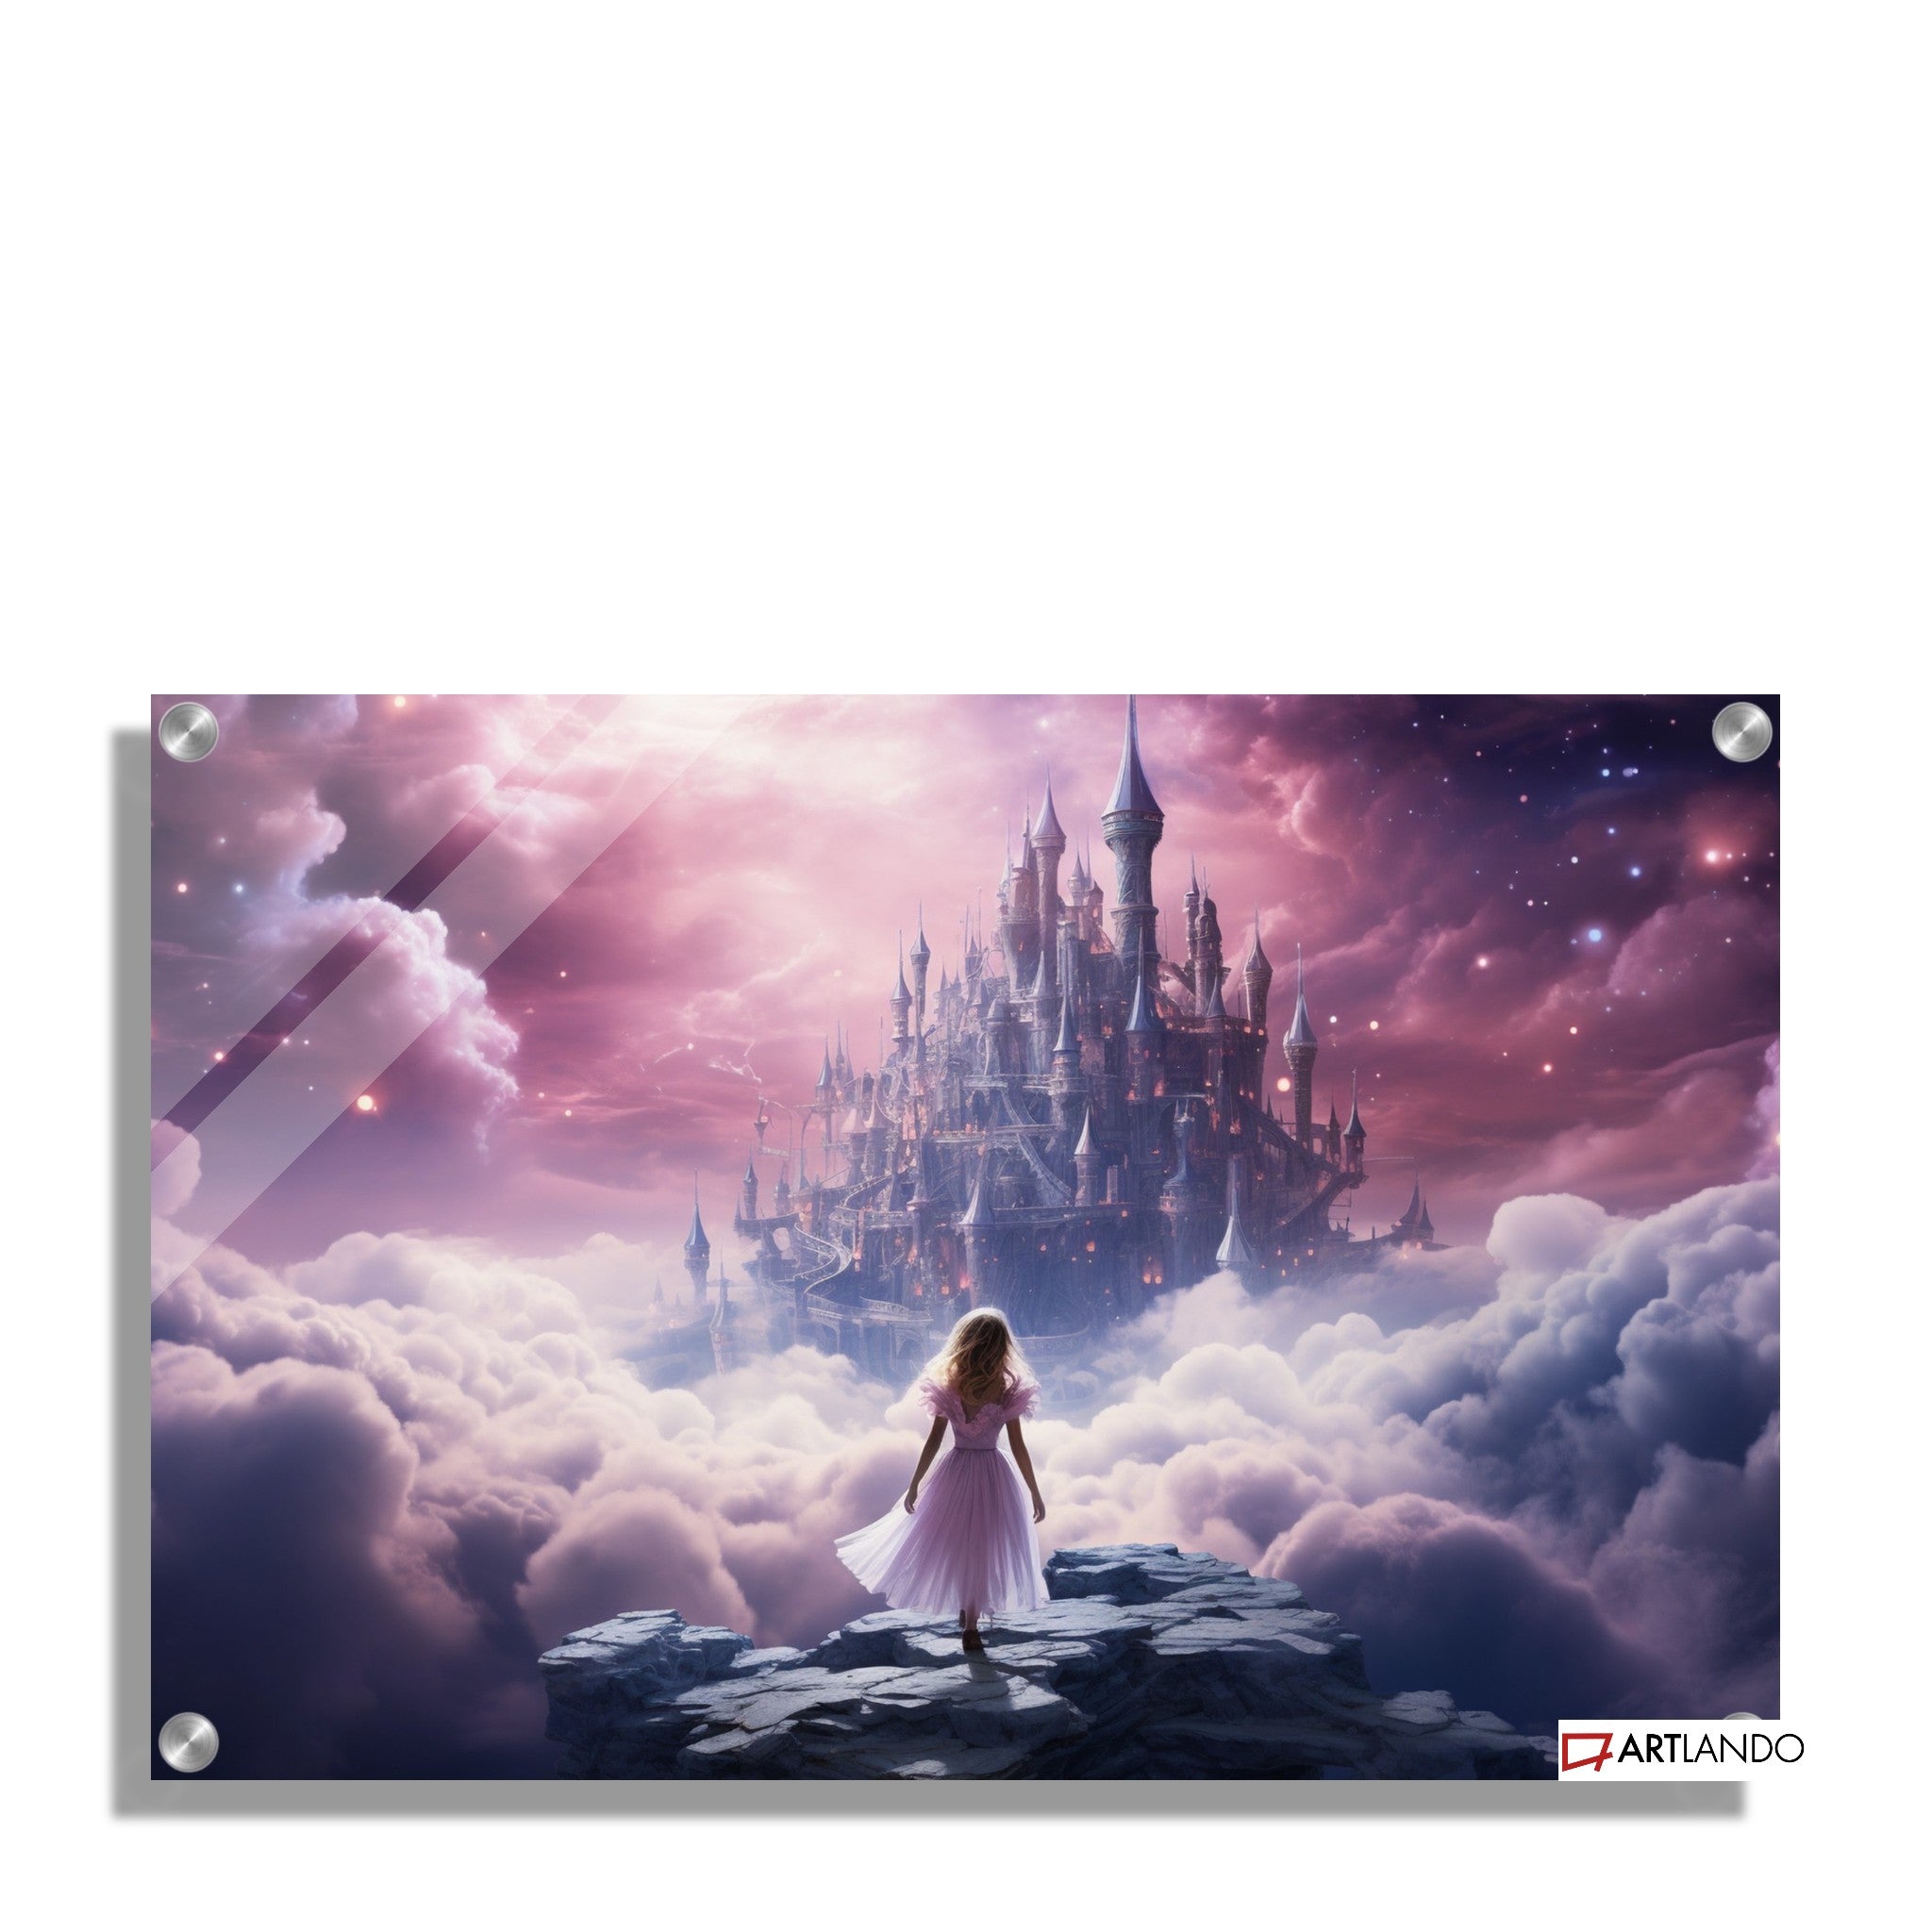 Mädchen steht vor verzaubertem Schloss umgeben von lila Wolken und Sternen